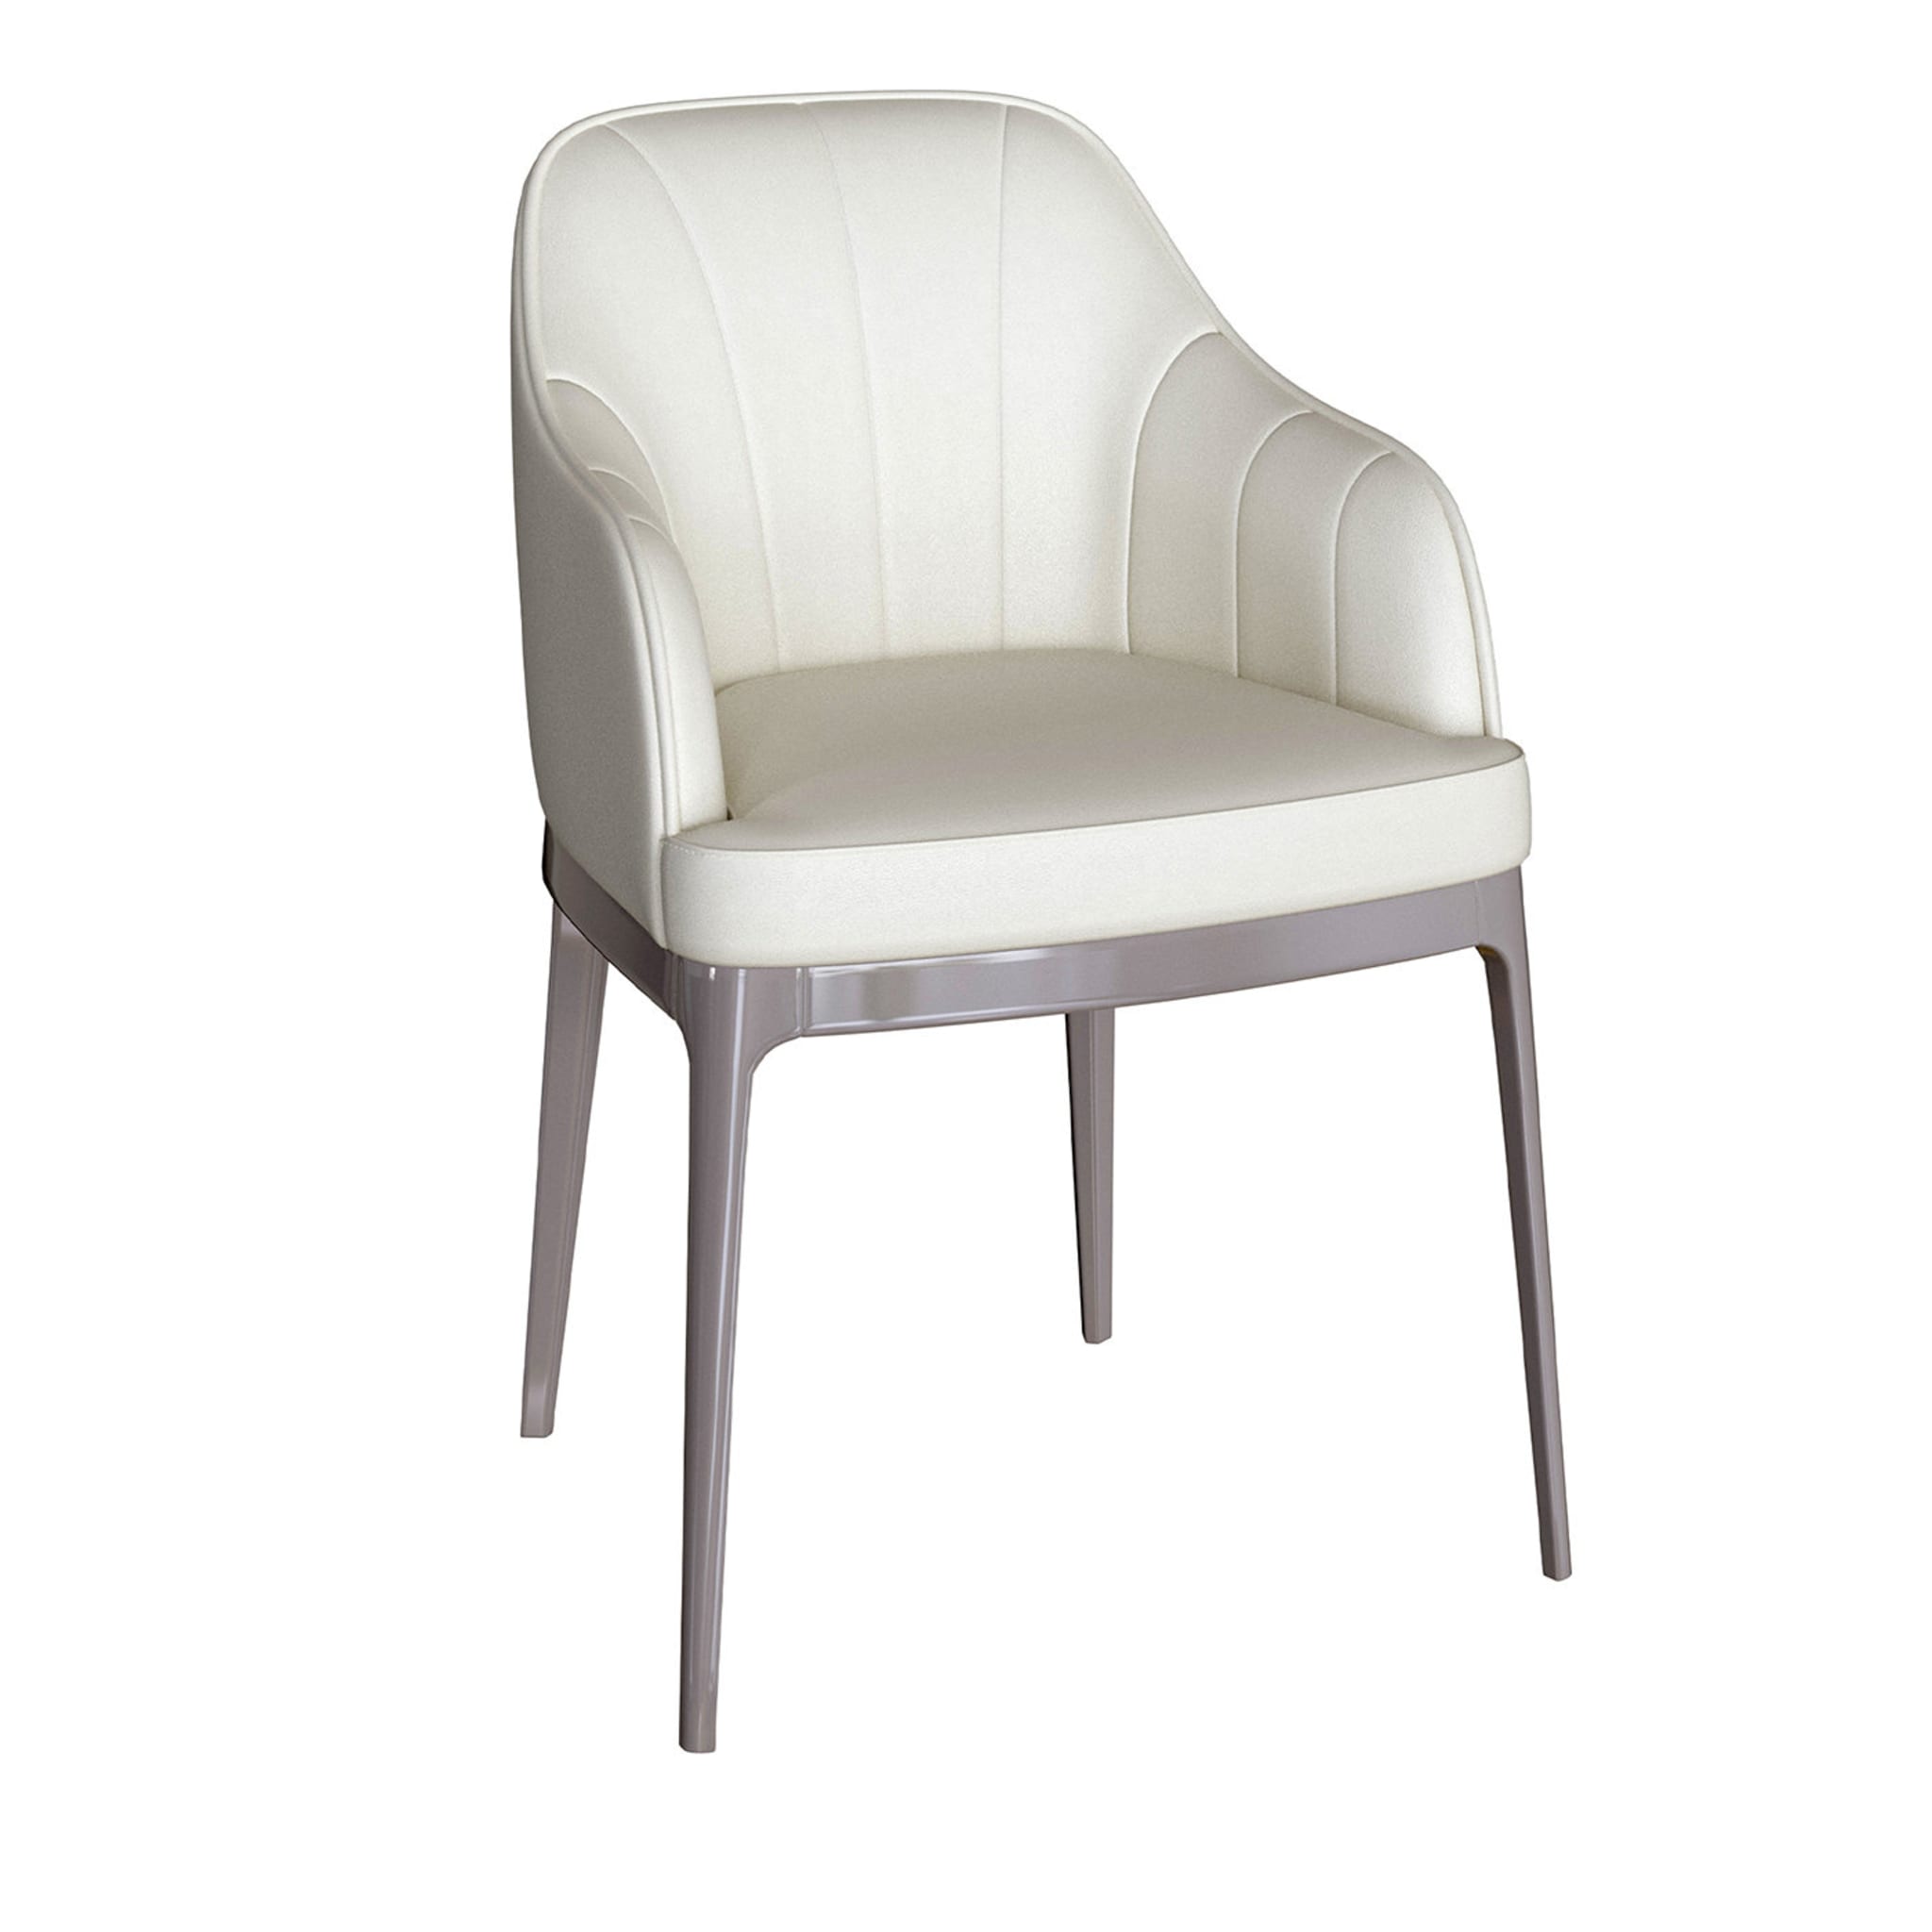 Clizia White Chair - Main view